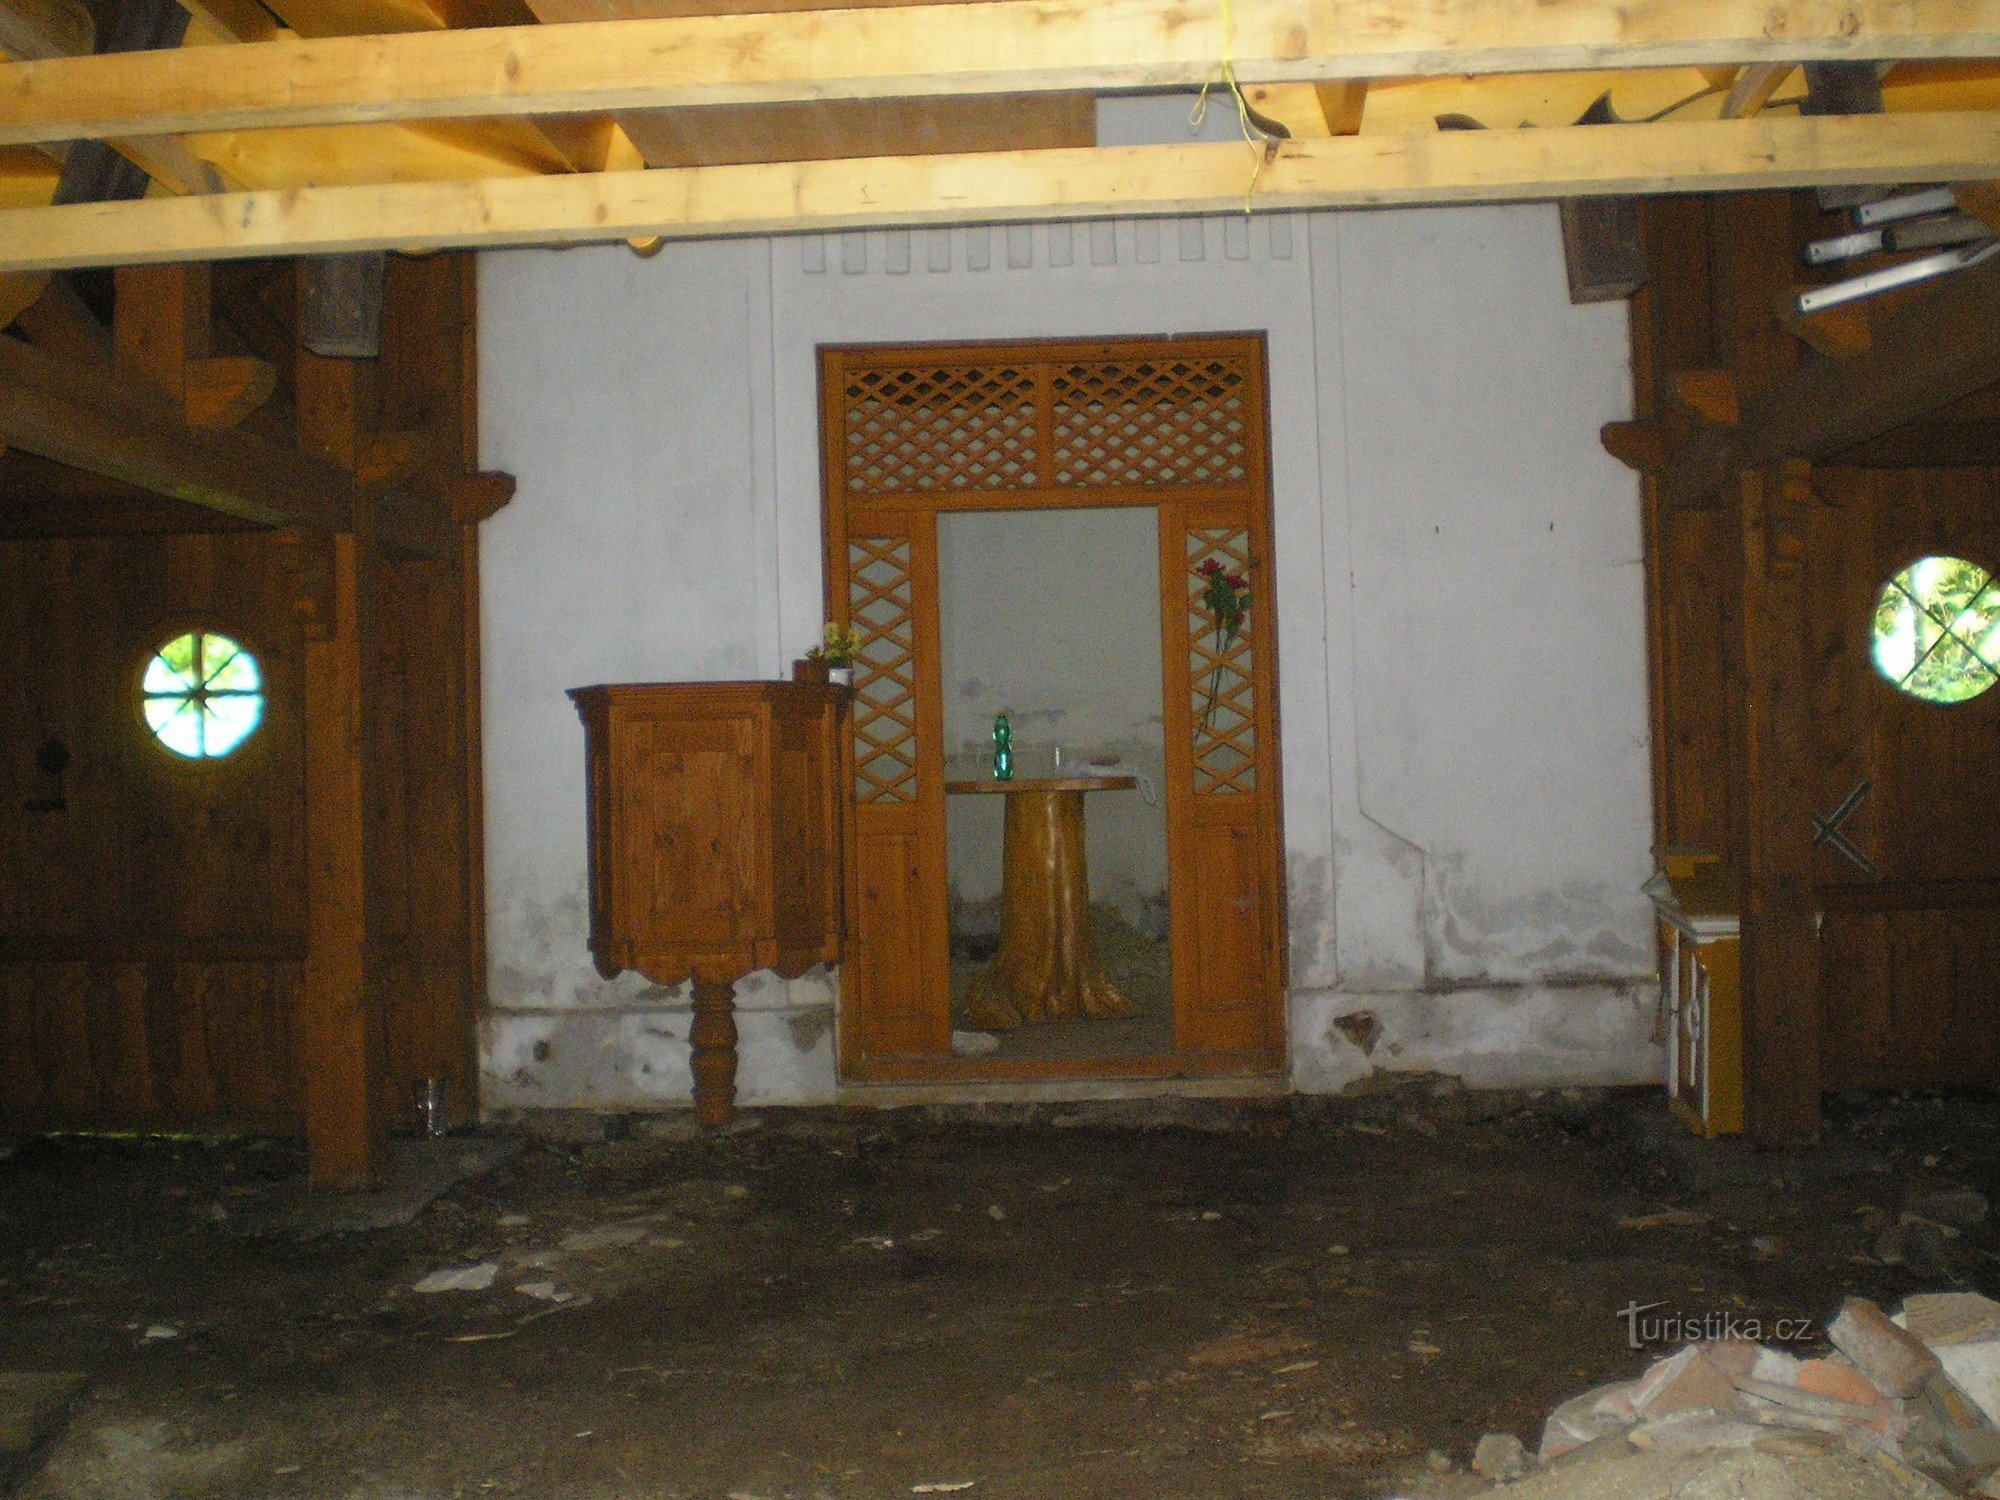 Unutrašnjost kapele - sada u rekonstrukciji